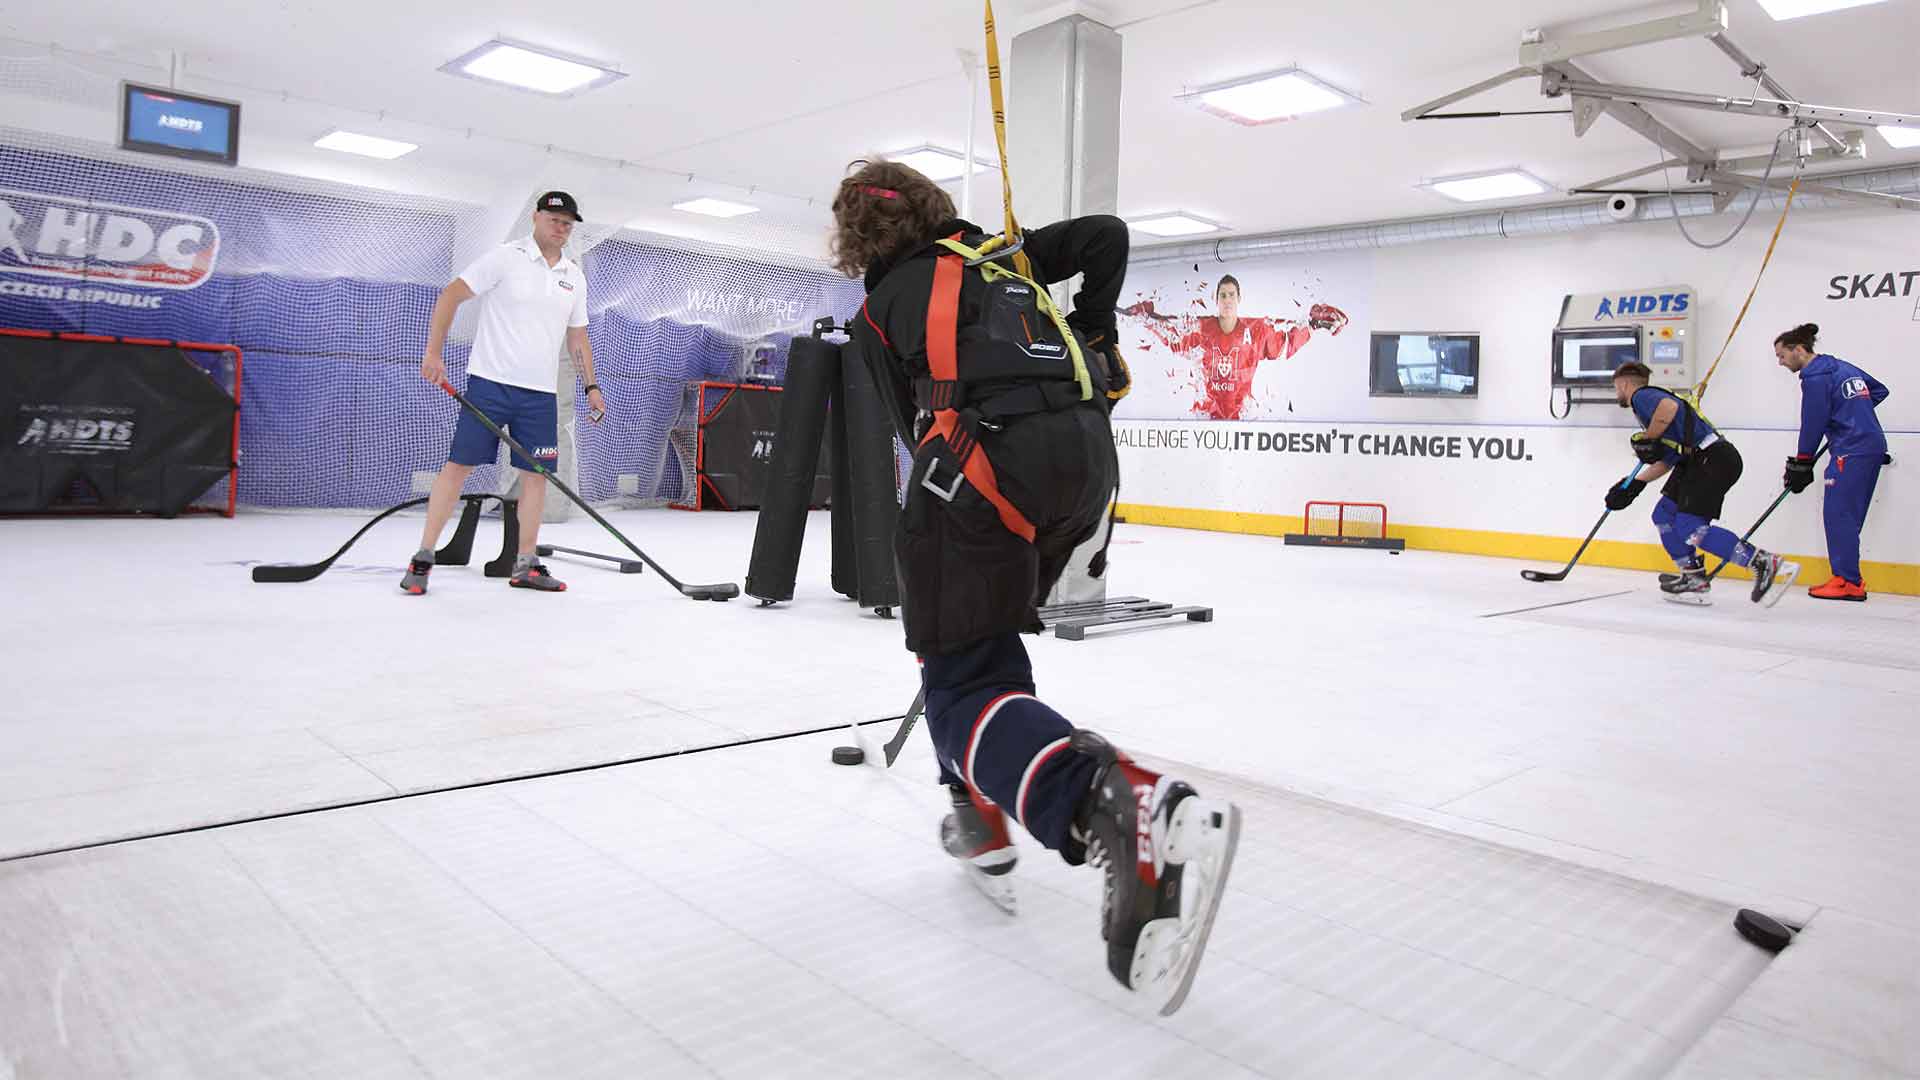 training on a skating treadmill